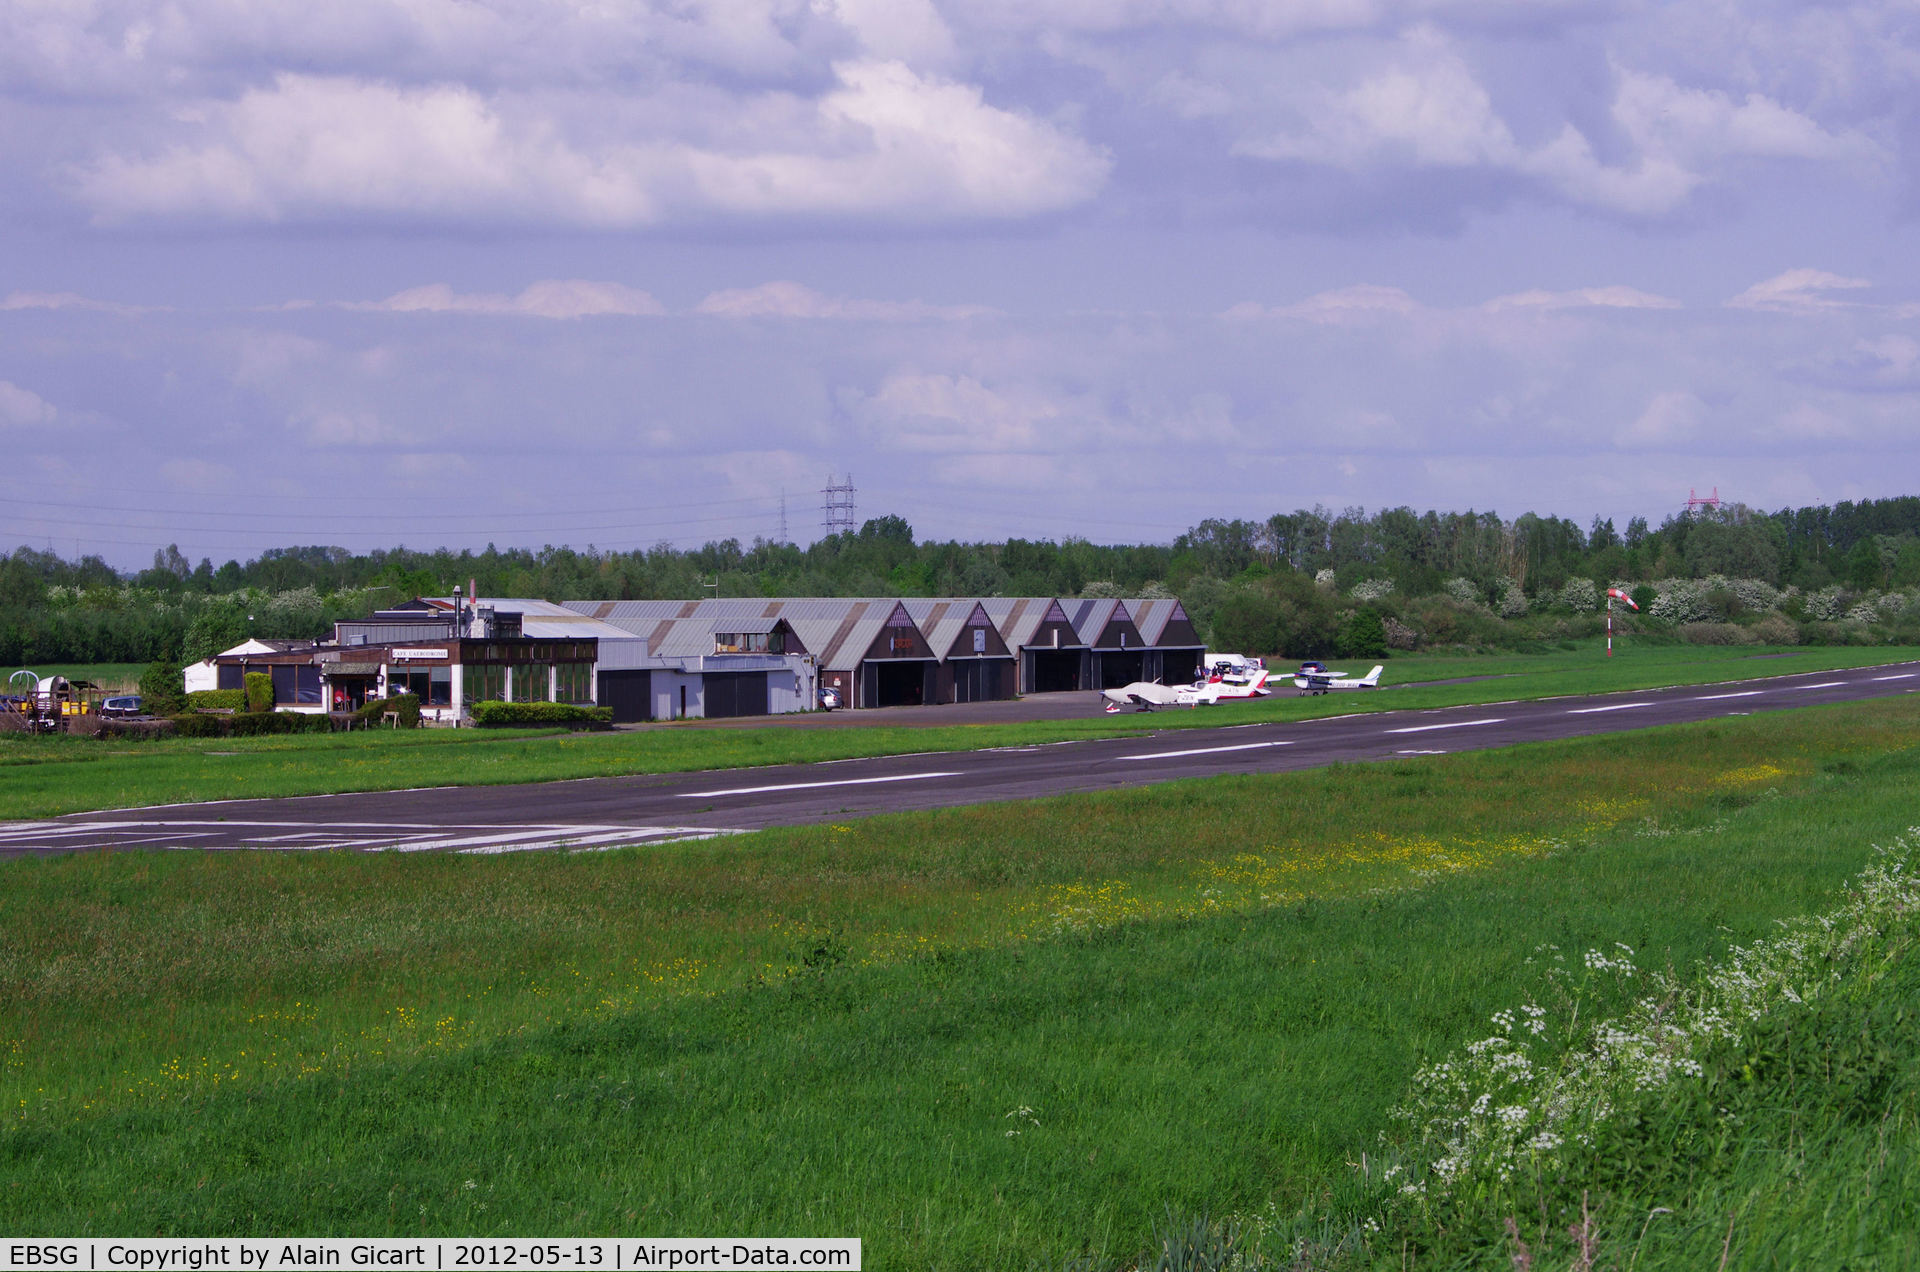 Saint-Ghislain AB Airport, Saint-Ghislain Belgium (EBSG) - Overall view of the airport